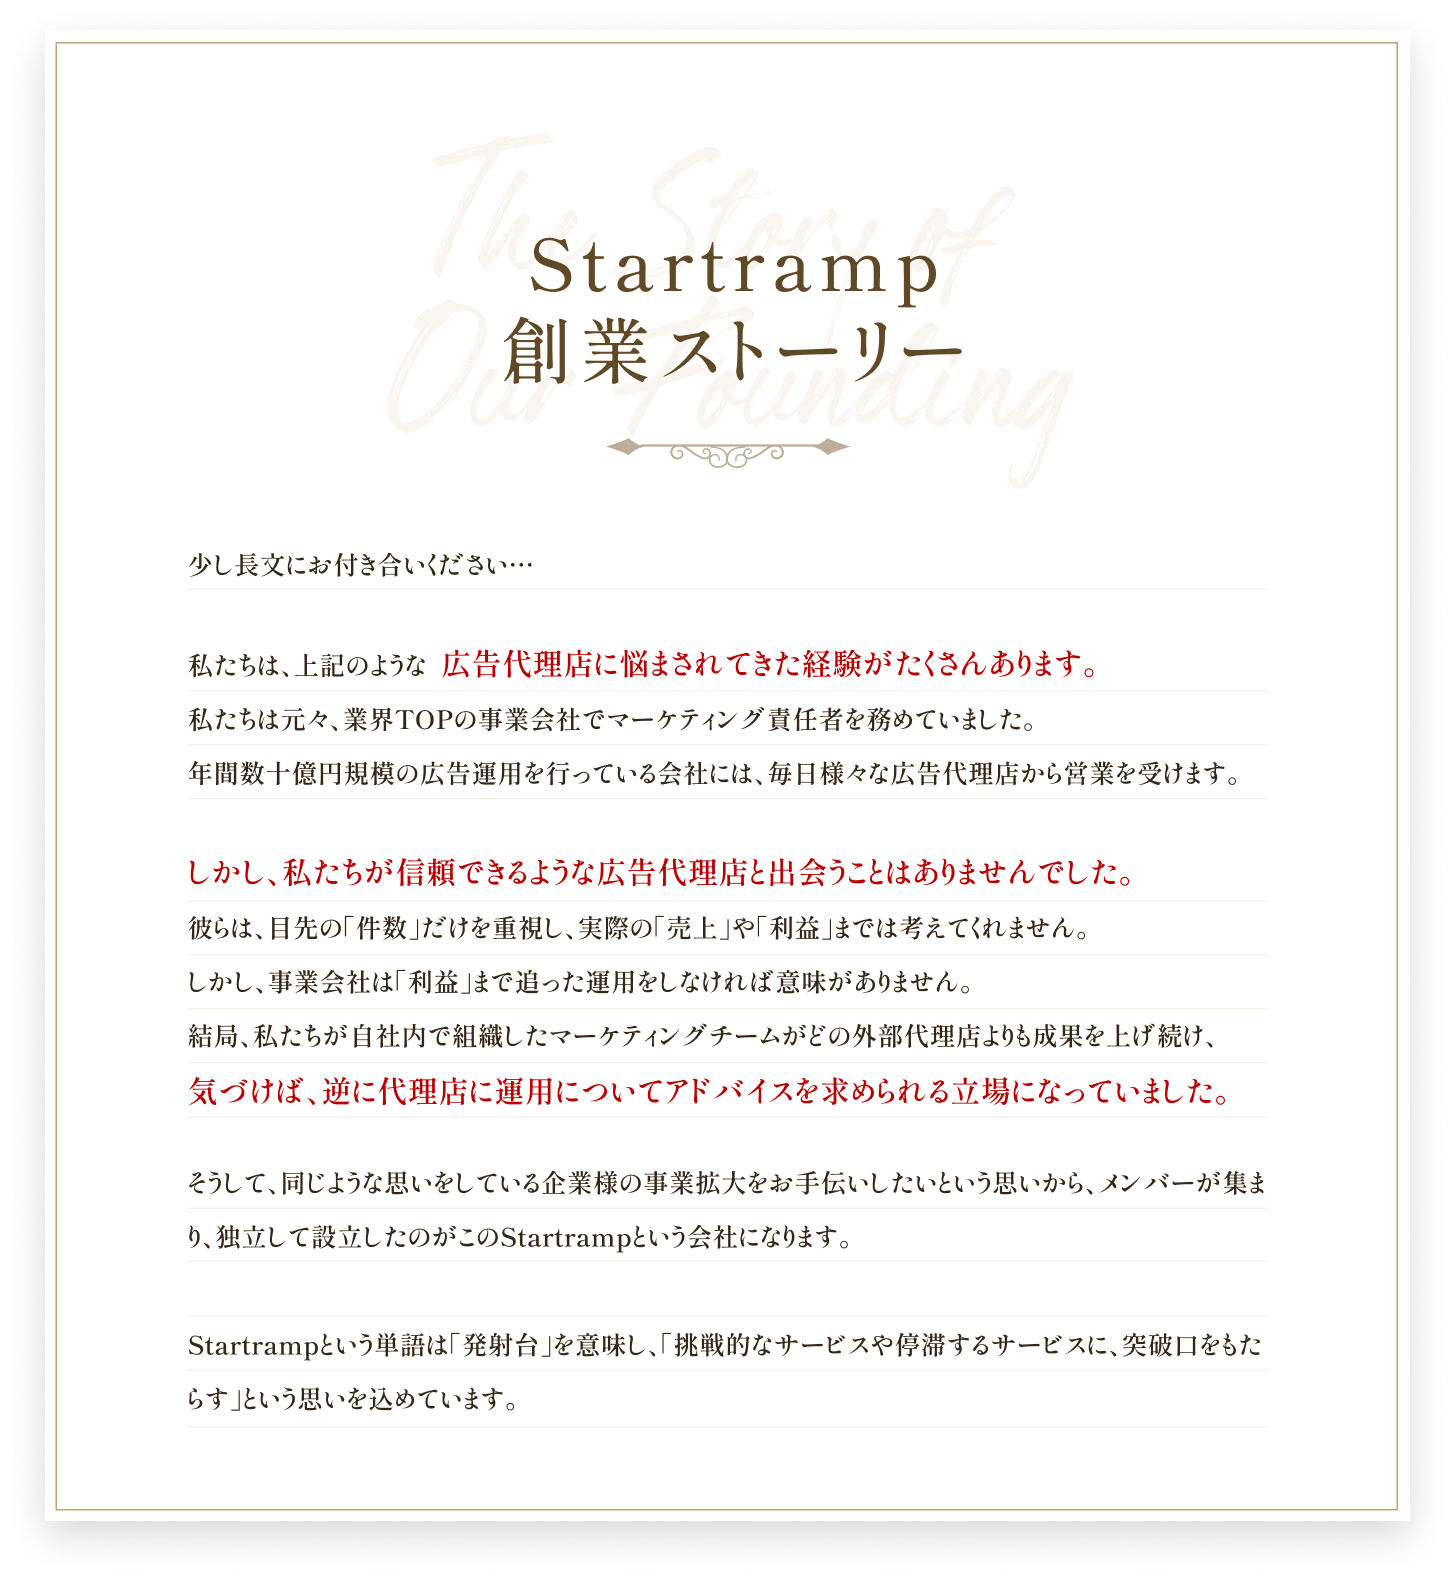 Startramp創業ストーリー